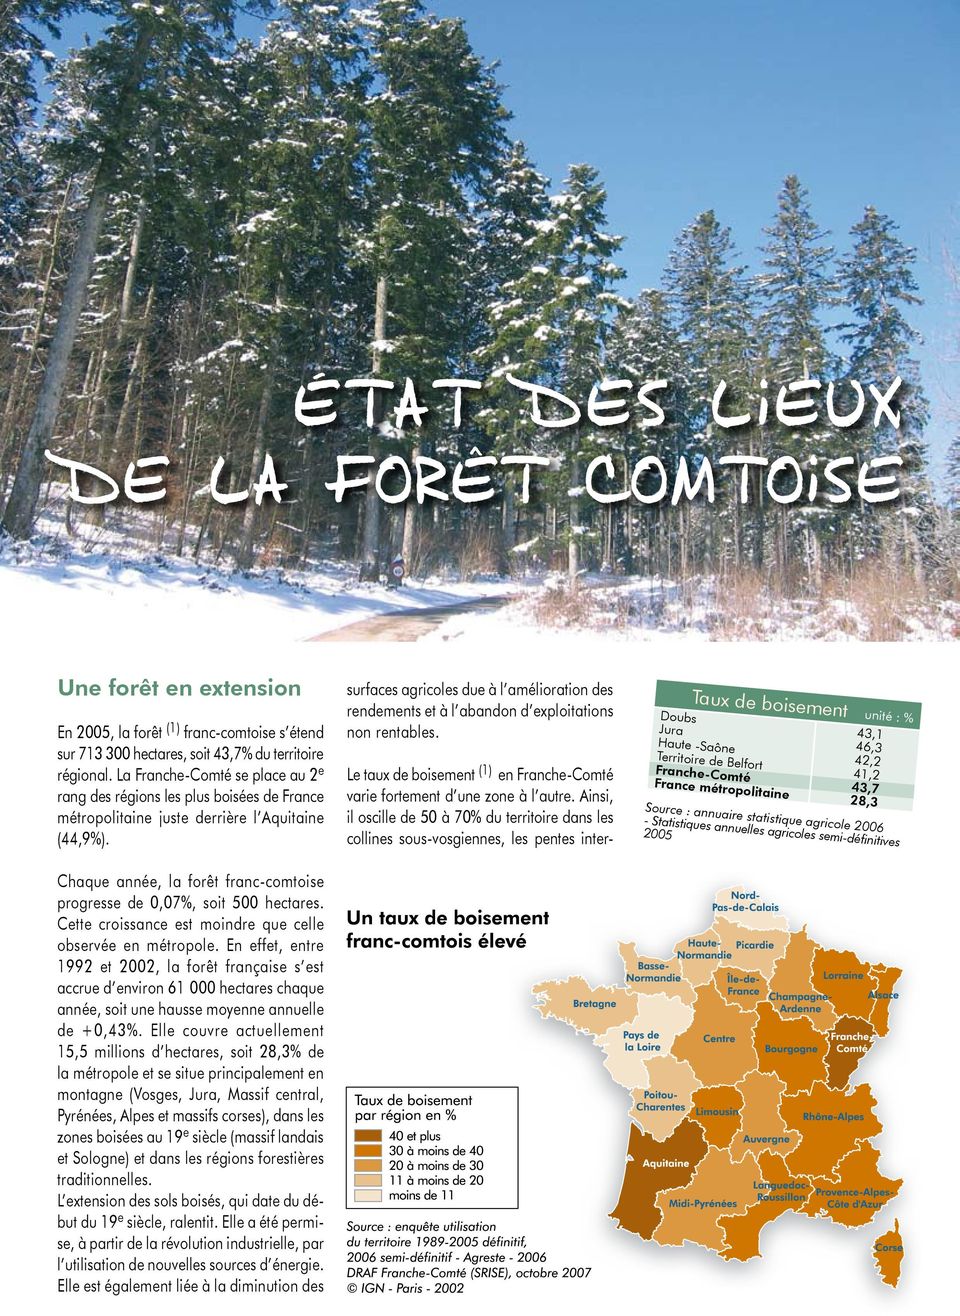 Chaque année, la forêt franc-comtoise progresse de 0,07%, soit 500 hectares. Cette croissance est moindre que celle observée en métropole.